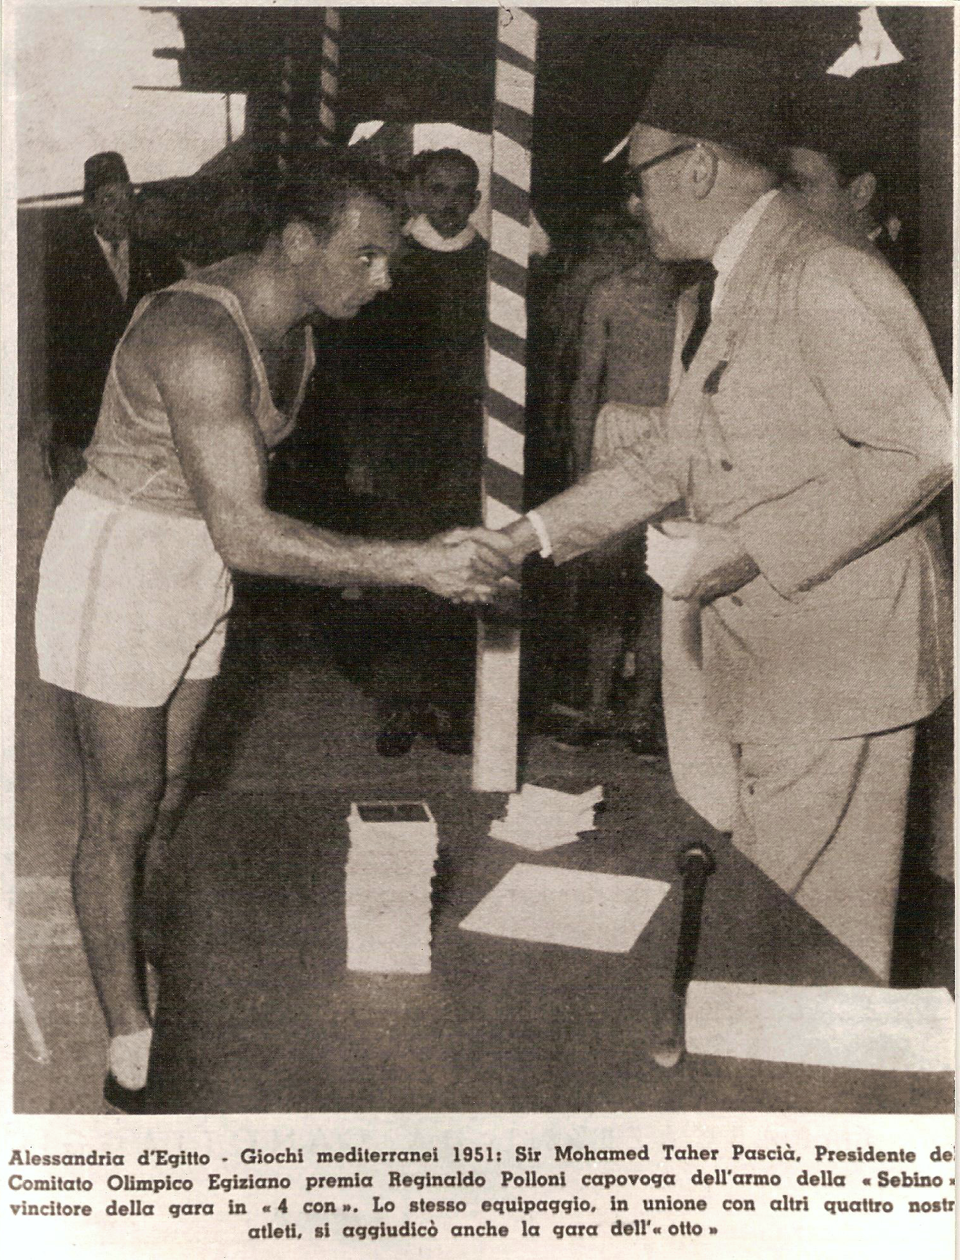 Egitto 1951 - Premiazione del 4 con. Il ritiro dei premi da parte di Polloni R.